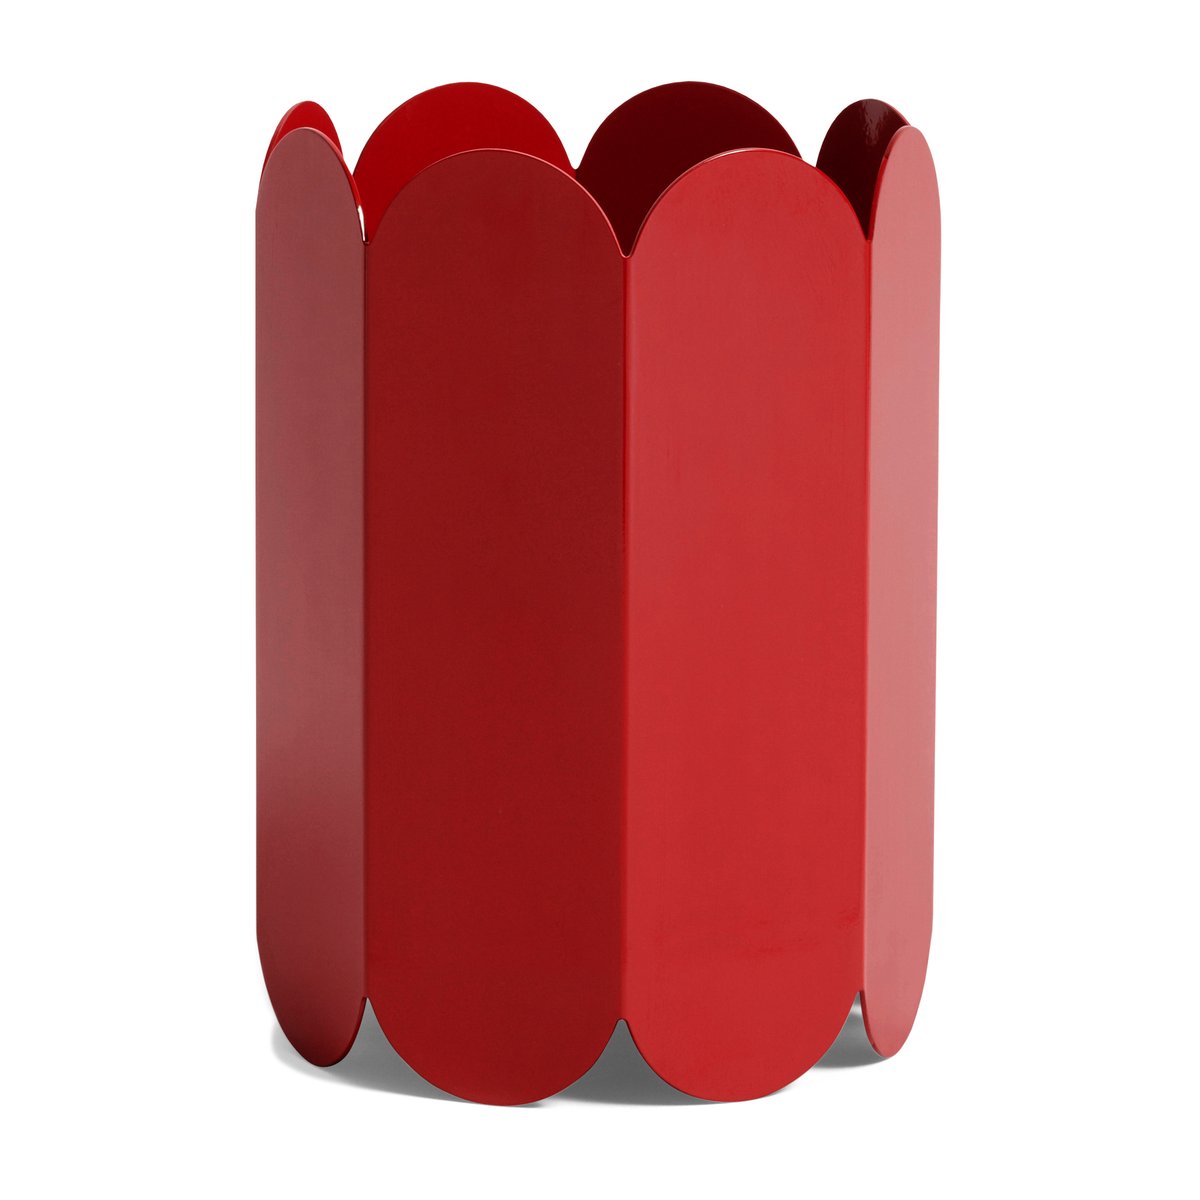 HAY Arcs vase 25 cm Red